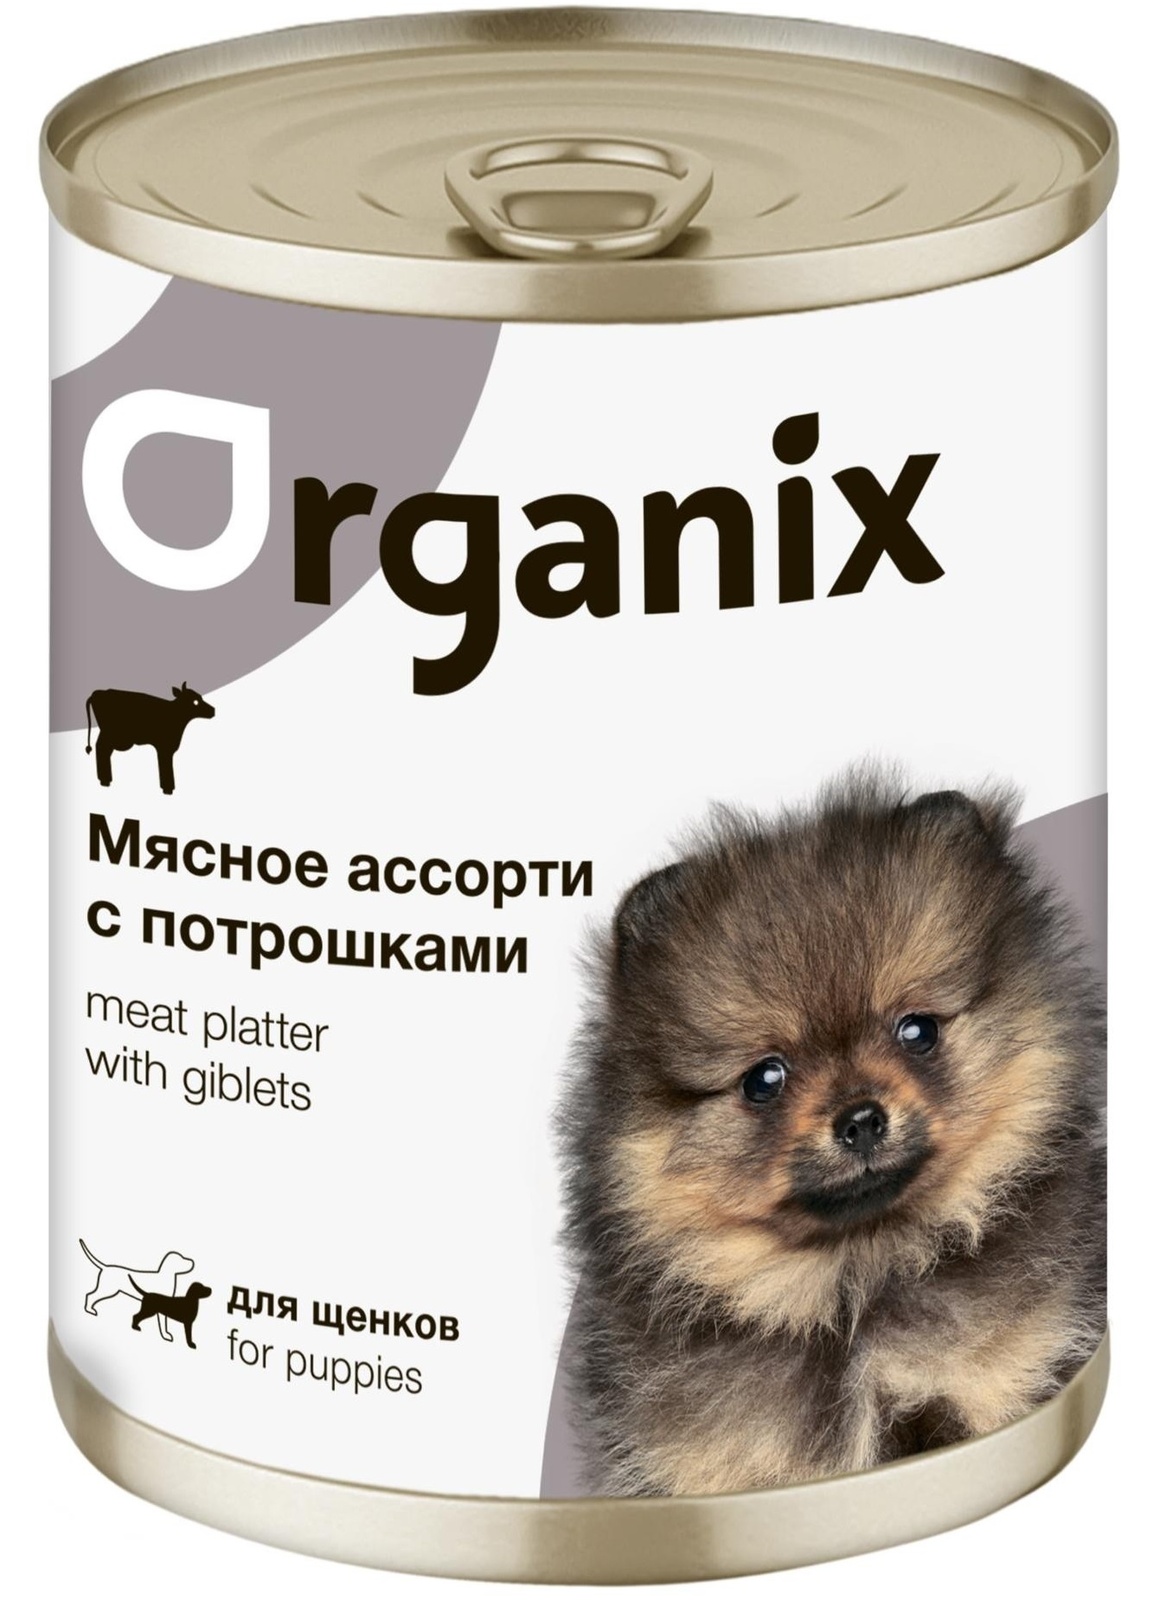 Organix консервы Organix консервы для щенков Мясное ассорти с потрошками (400 г) organix консервы organix монобелковые премиум консервы для собак с гусем 400 г